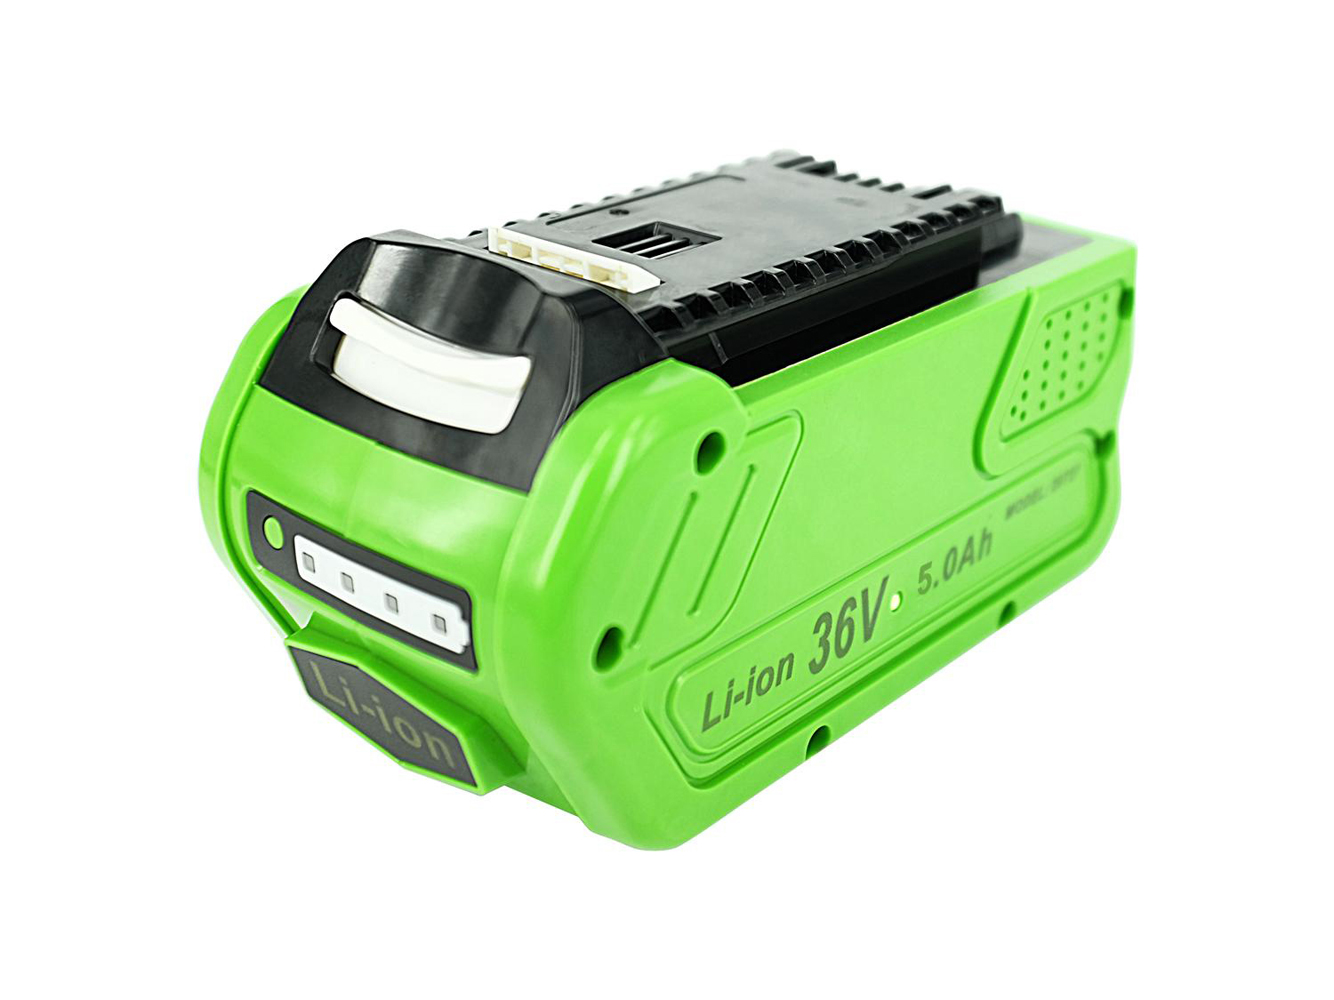 Repuesto compatible para batería de herramienta Greenworks G40AB, G40AC, G40CS30, G40DT35, G40GC, G40HT